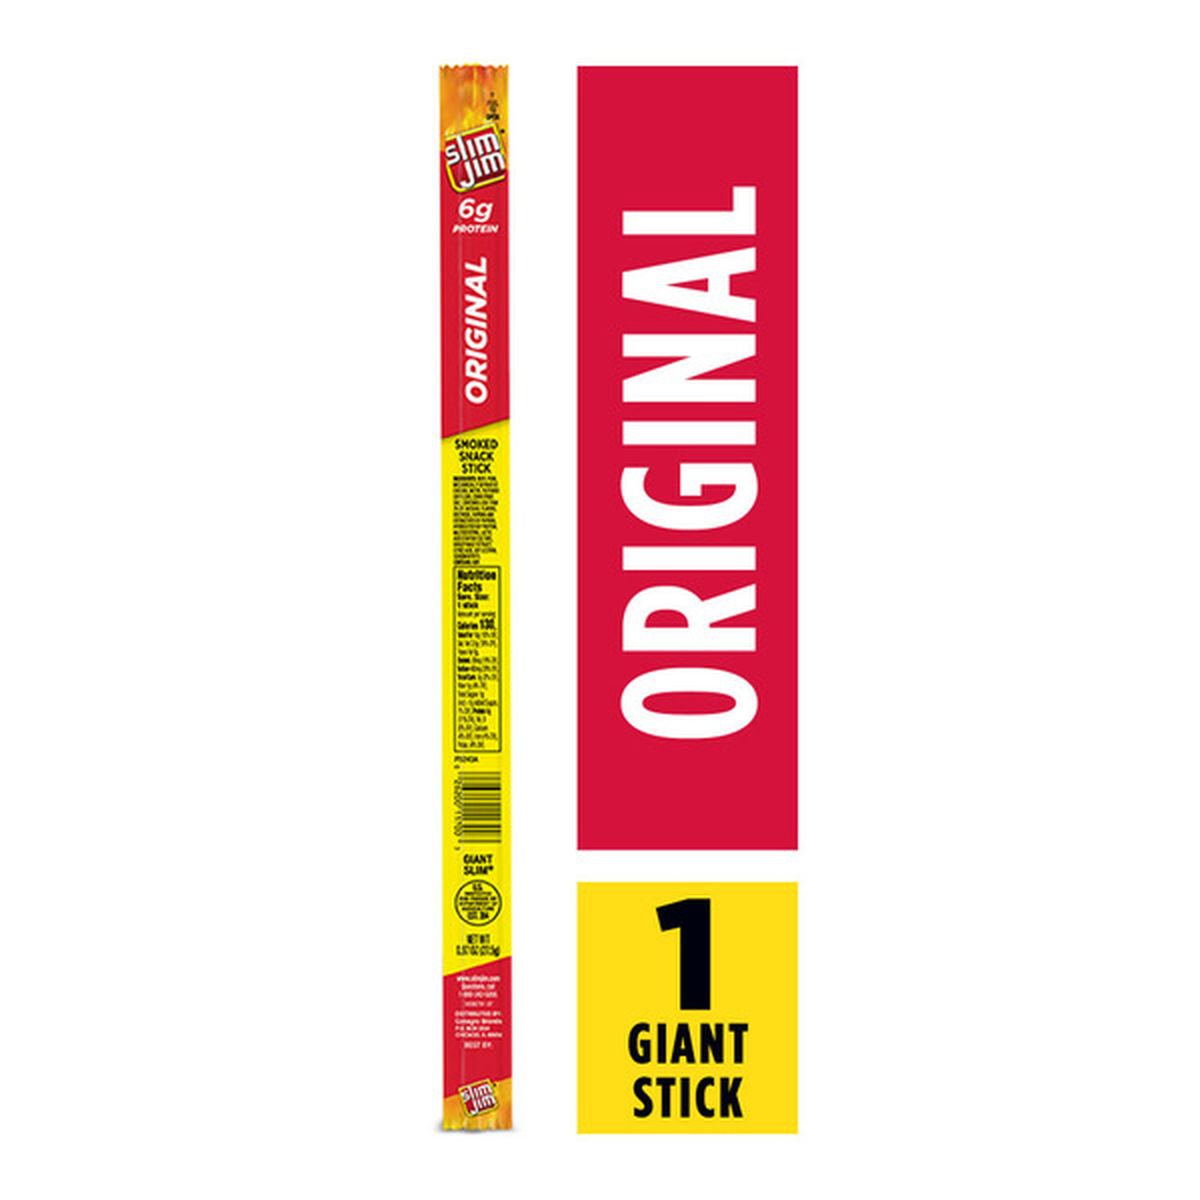 Save on Slim Jim Smoked Snack Sticks Giant Original - 6 ct Order